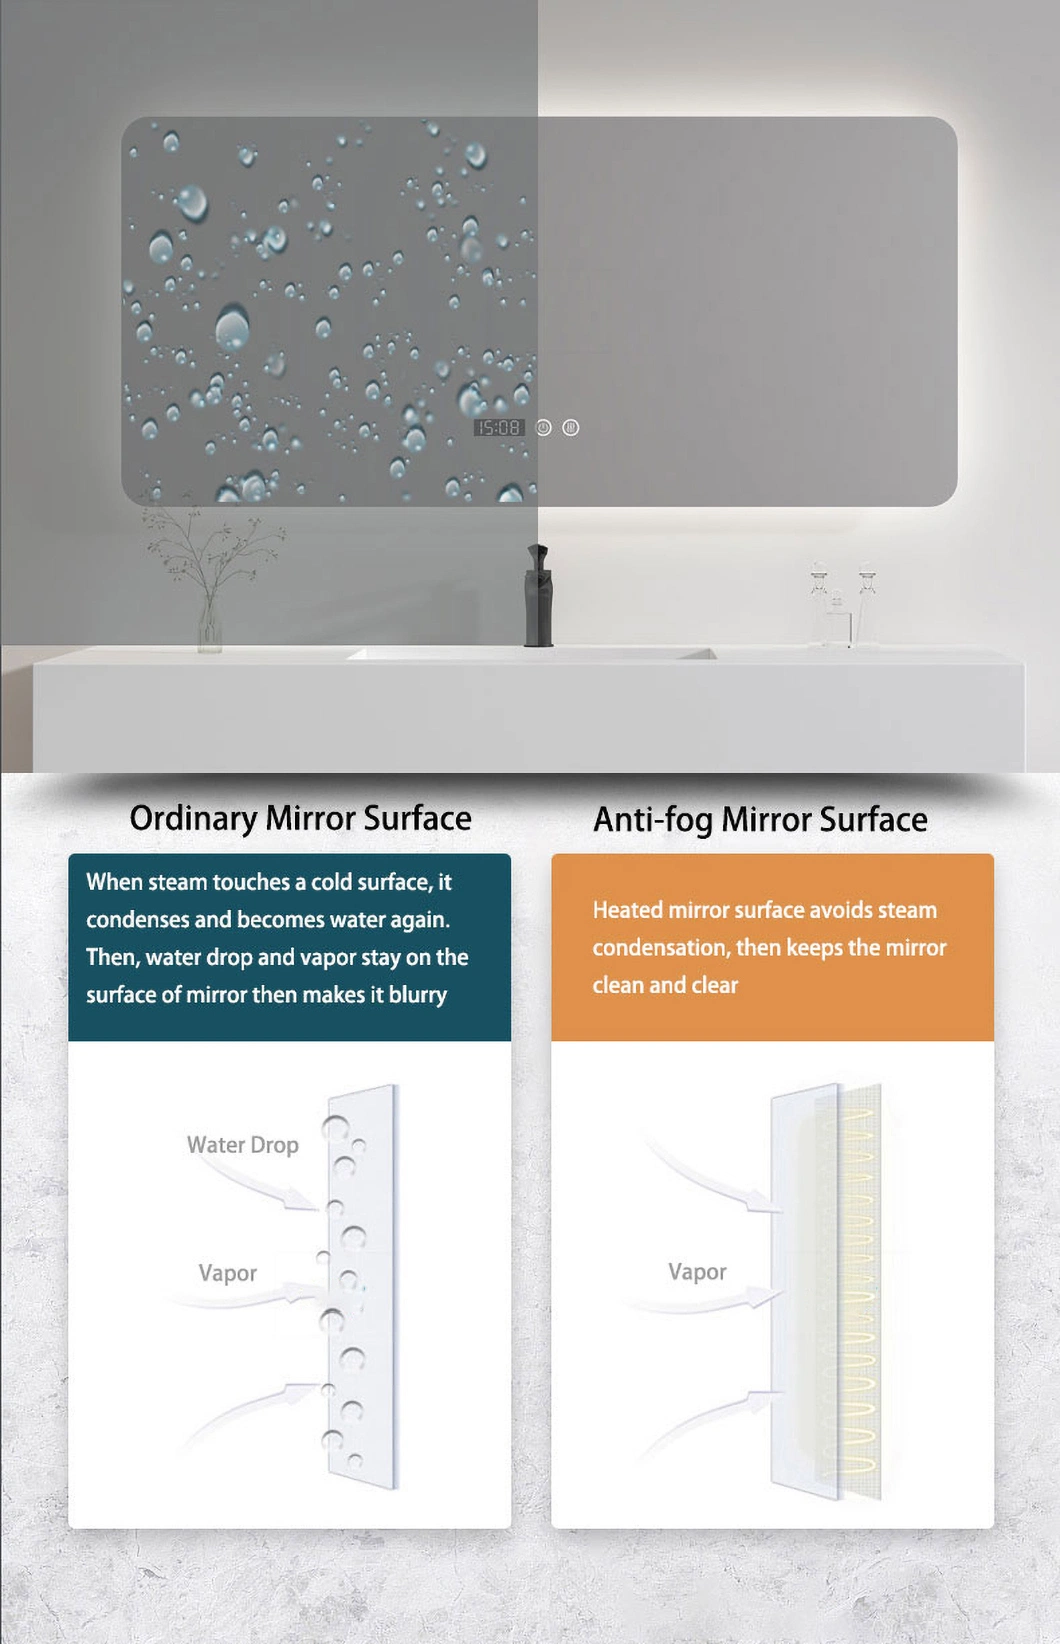 2022 New Design Bathroom Cabinet Waterproof Medicine Cabinet Marble Bathroom Mirror Cabinet